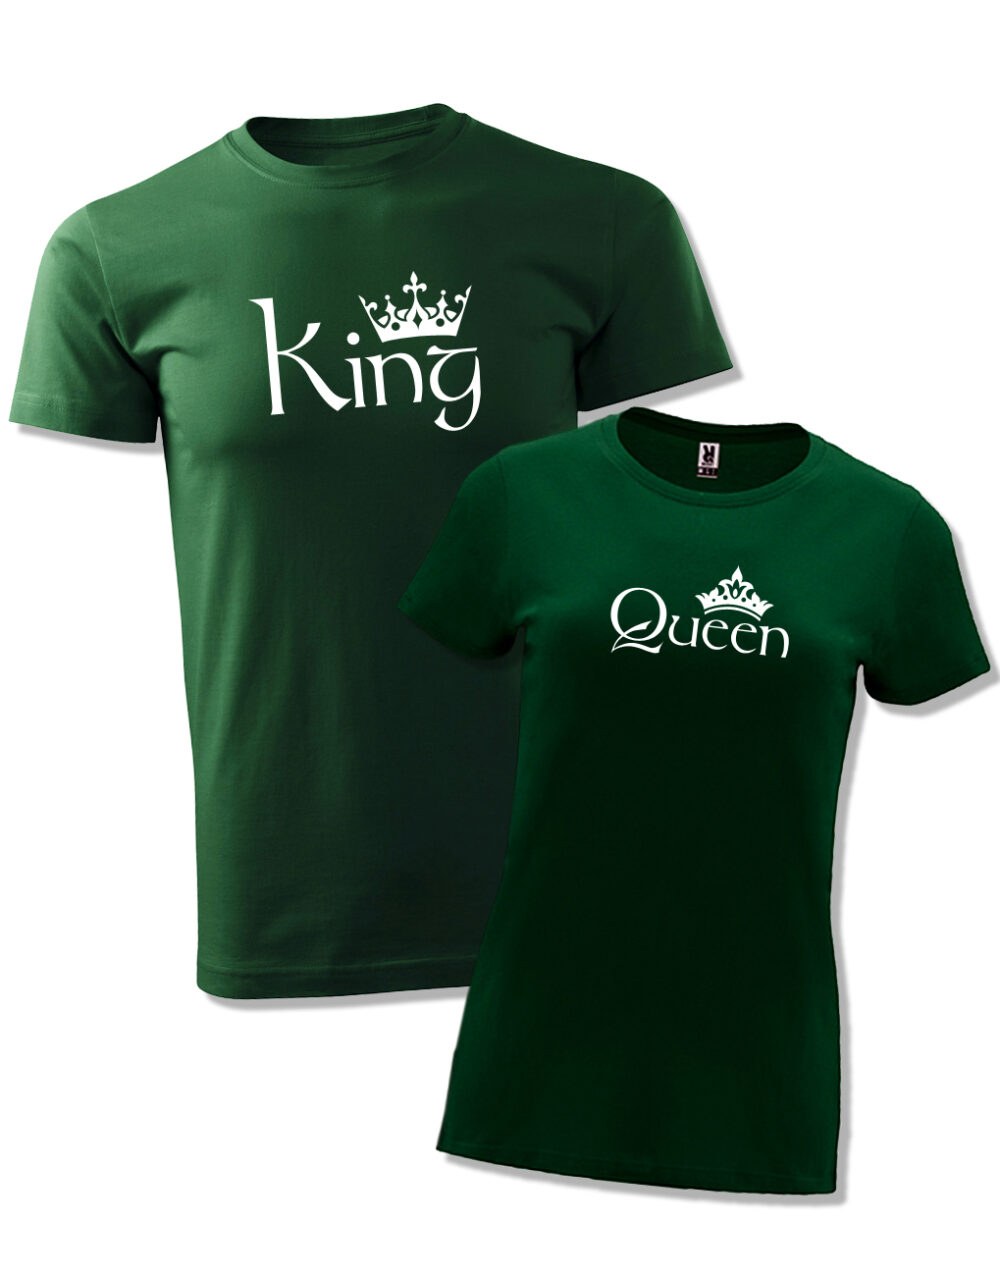 Párová trička s potiskem King & Queen lahvově zelená